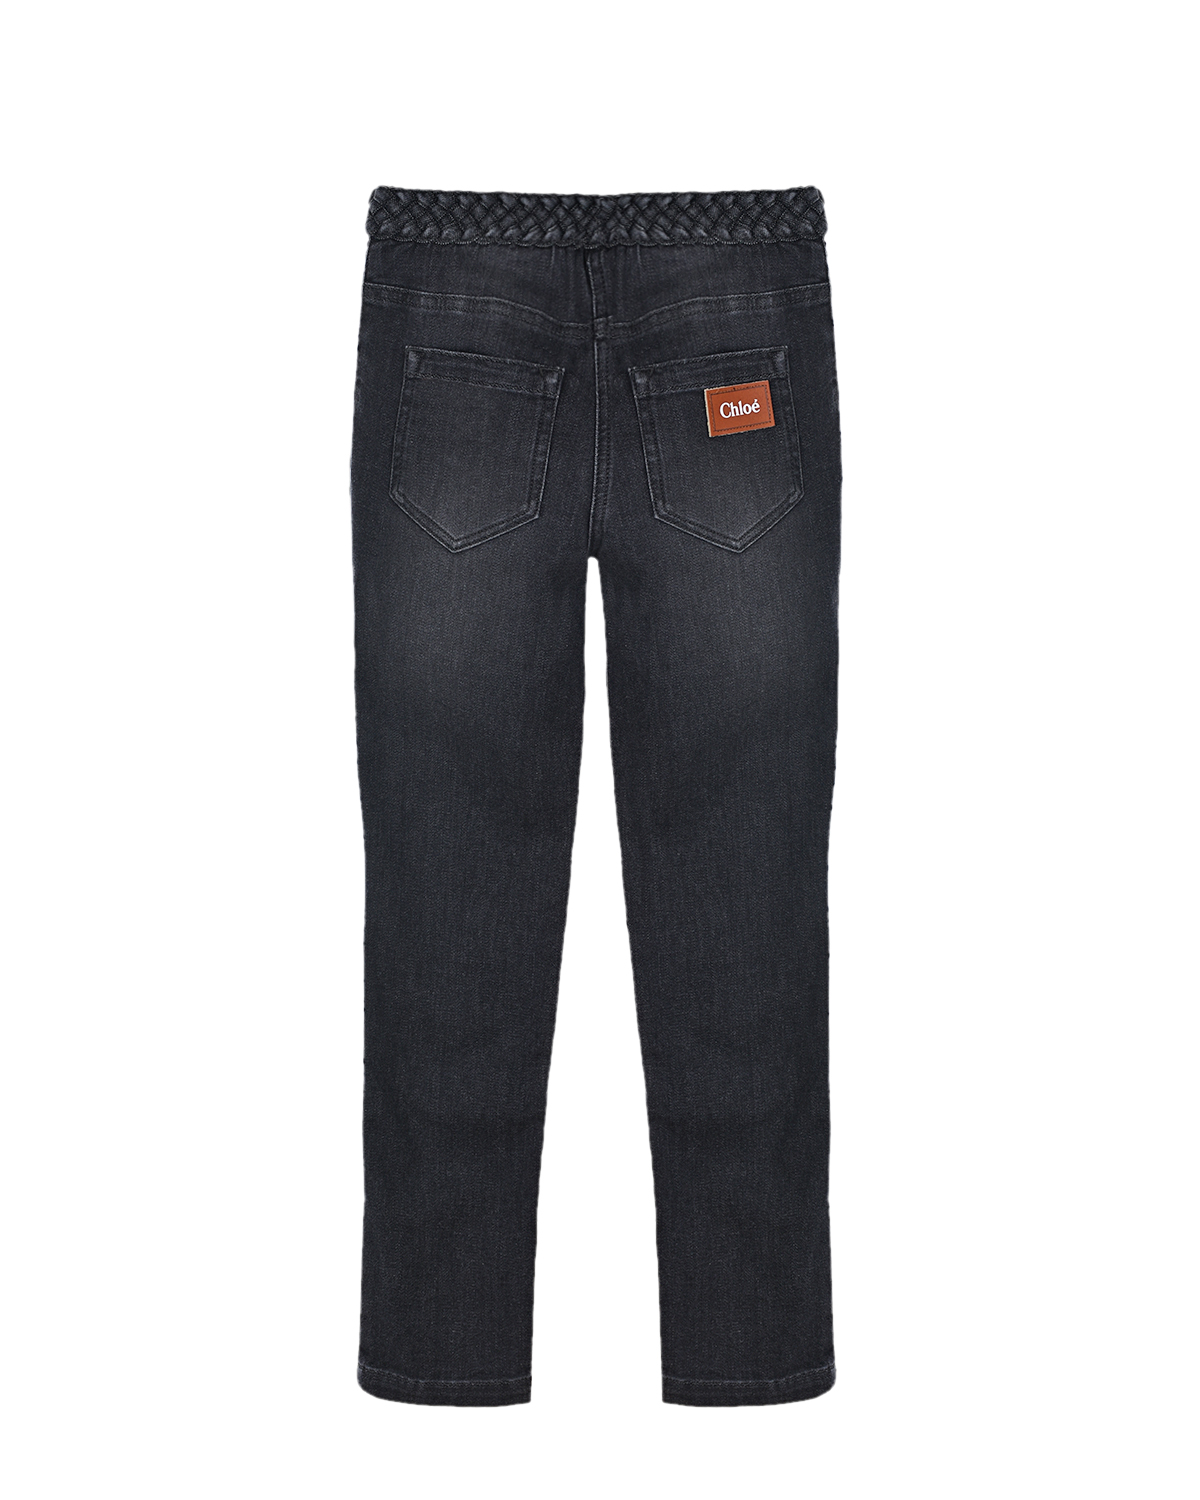 Черные джинсы с плетеным поясом Chloe детские, размер 128, цвет черный - фото 2